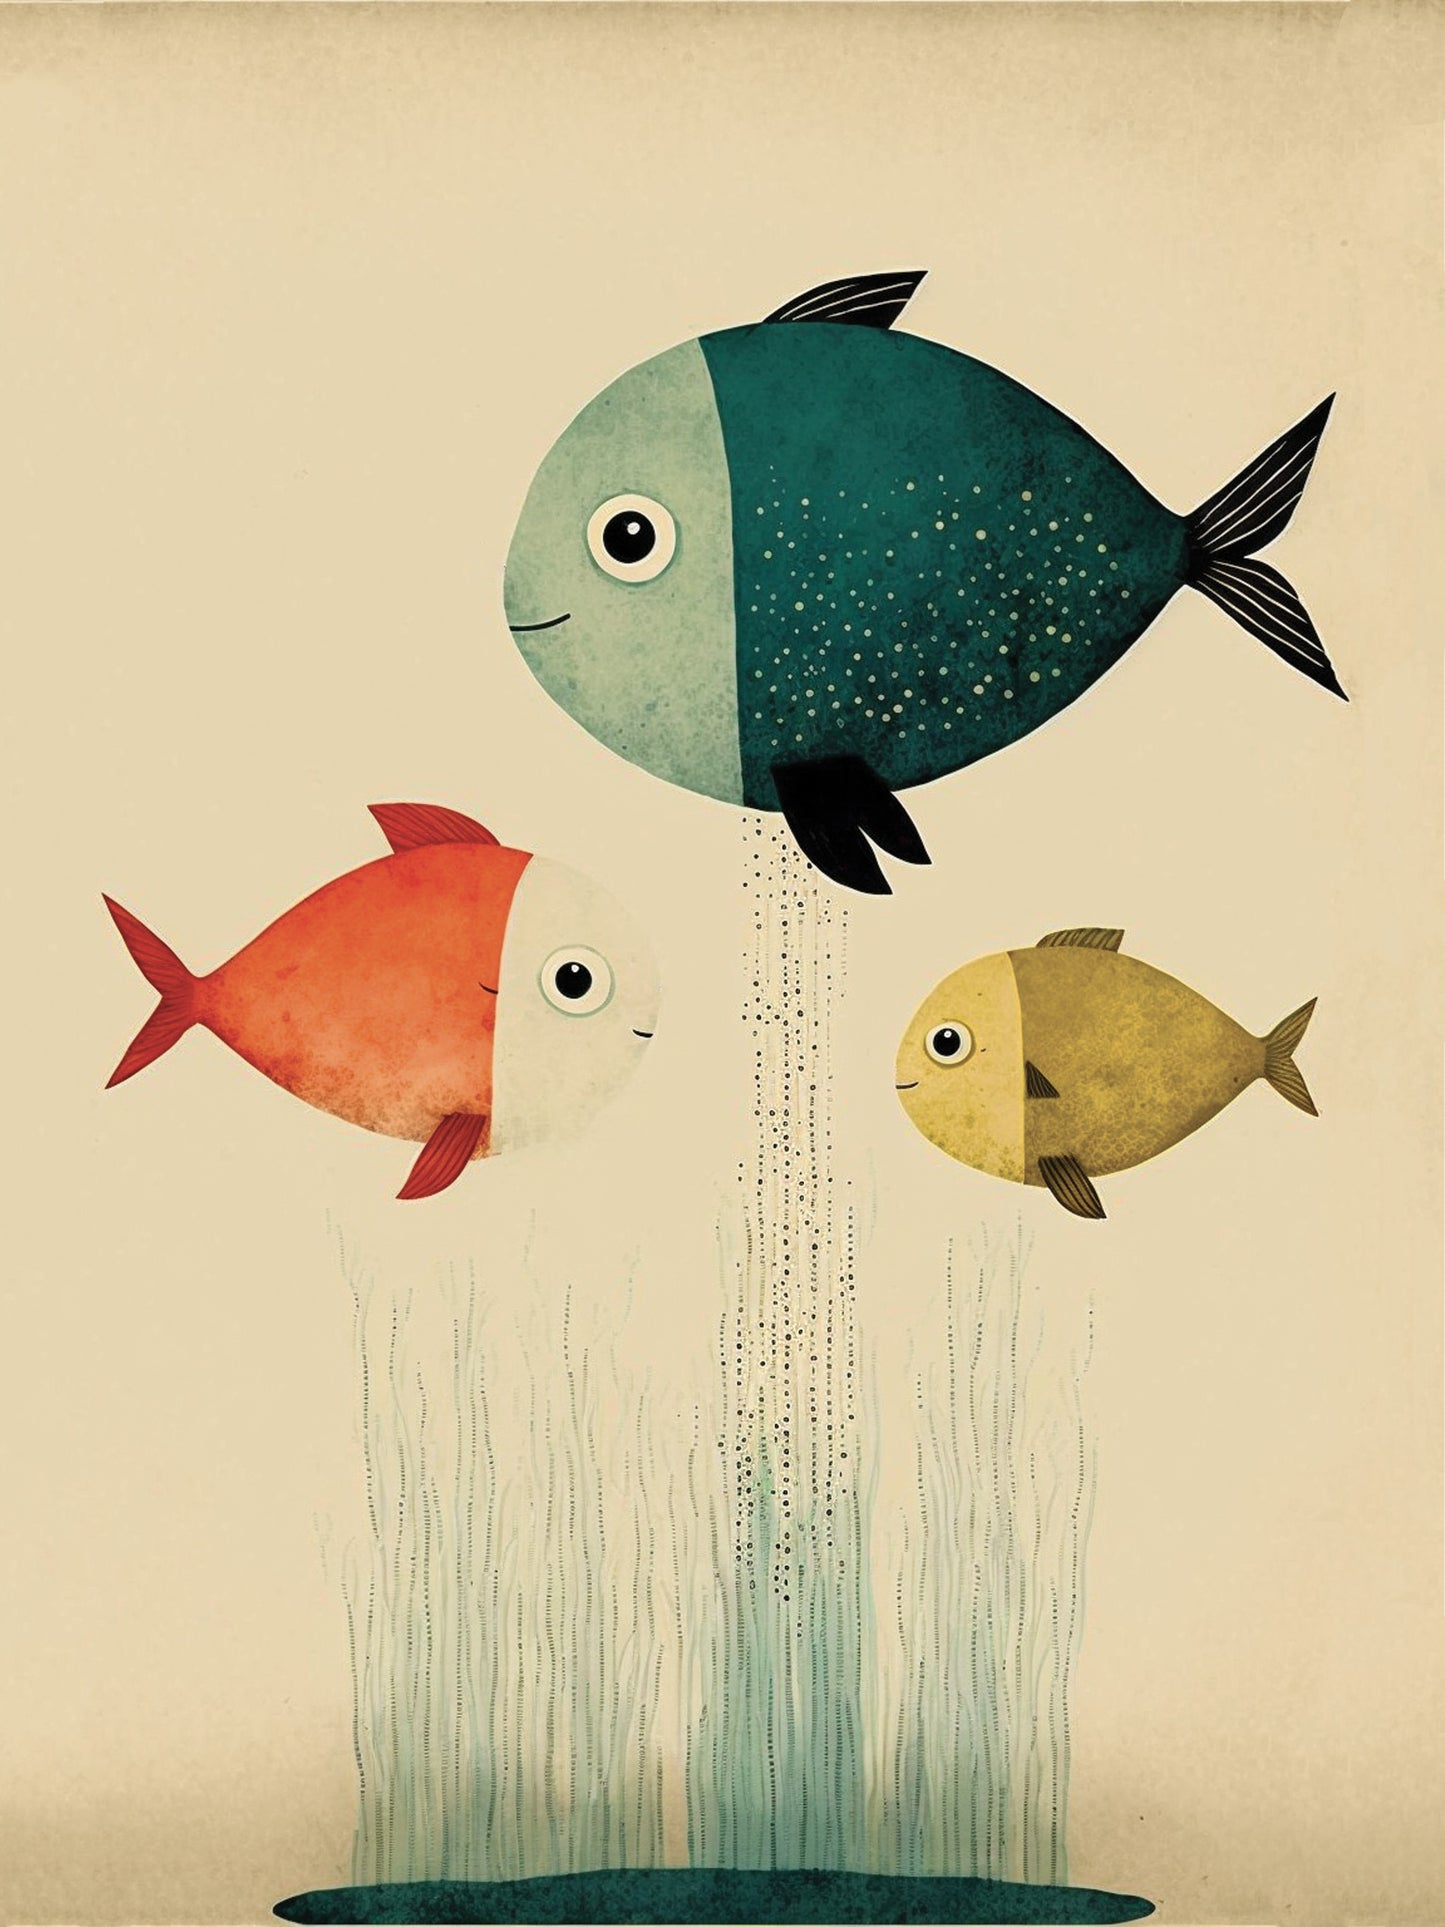 Tableau poisson enfants représentant trois poissons colorés, heureux dans un aquarium